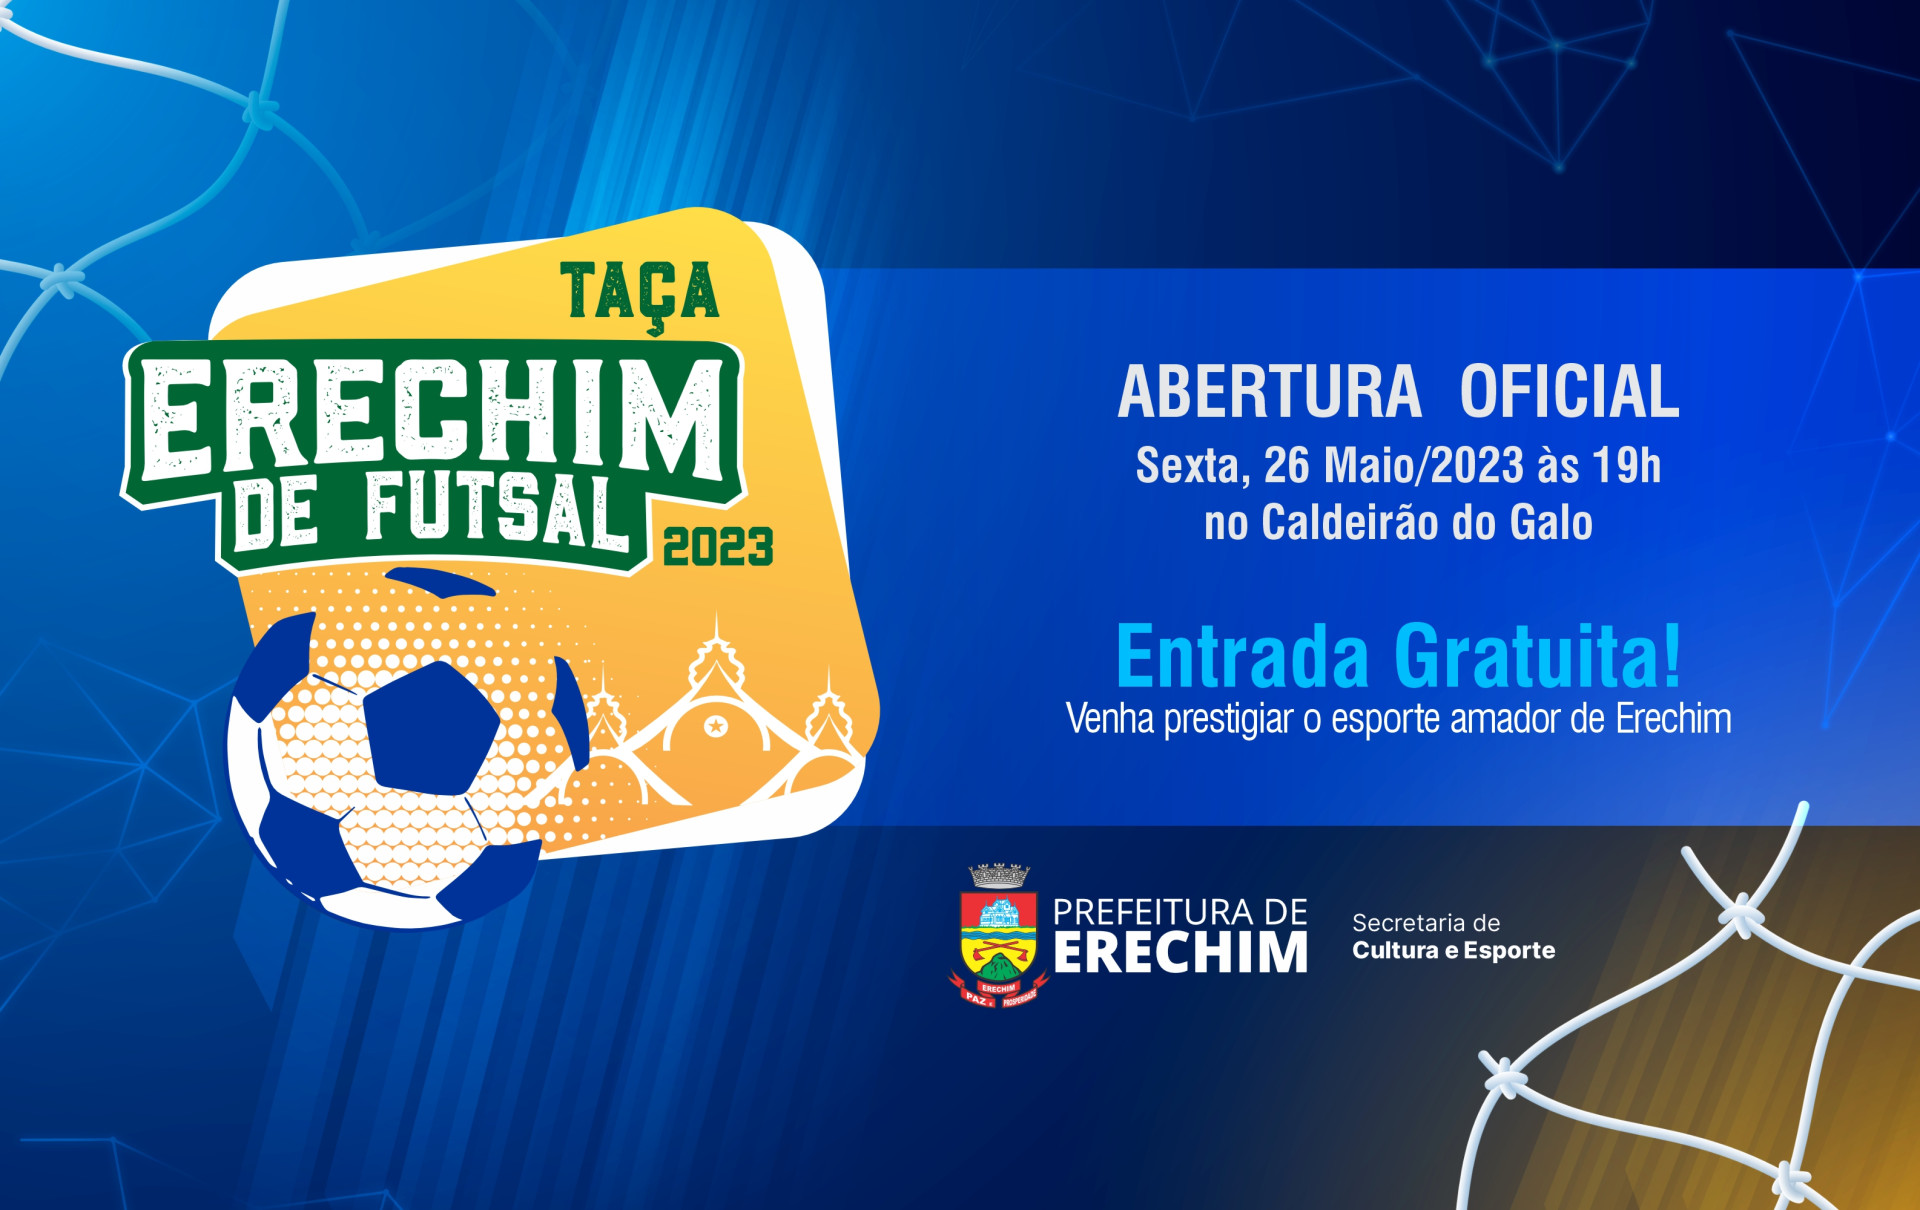  Abertura da Taça Erechim de Futsal 2023